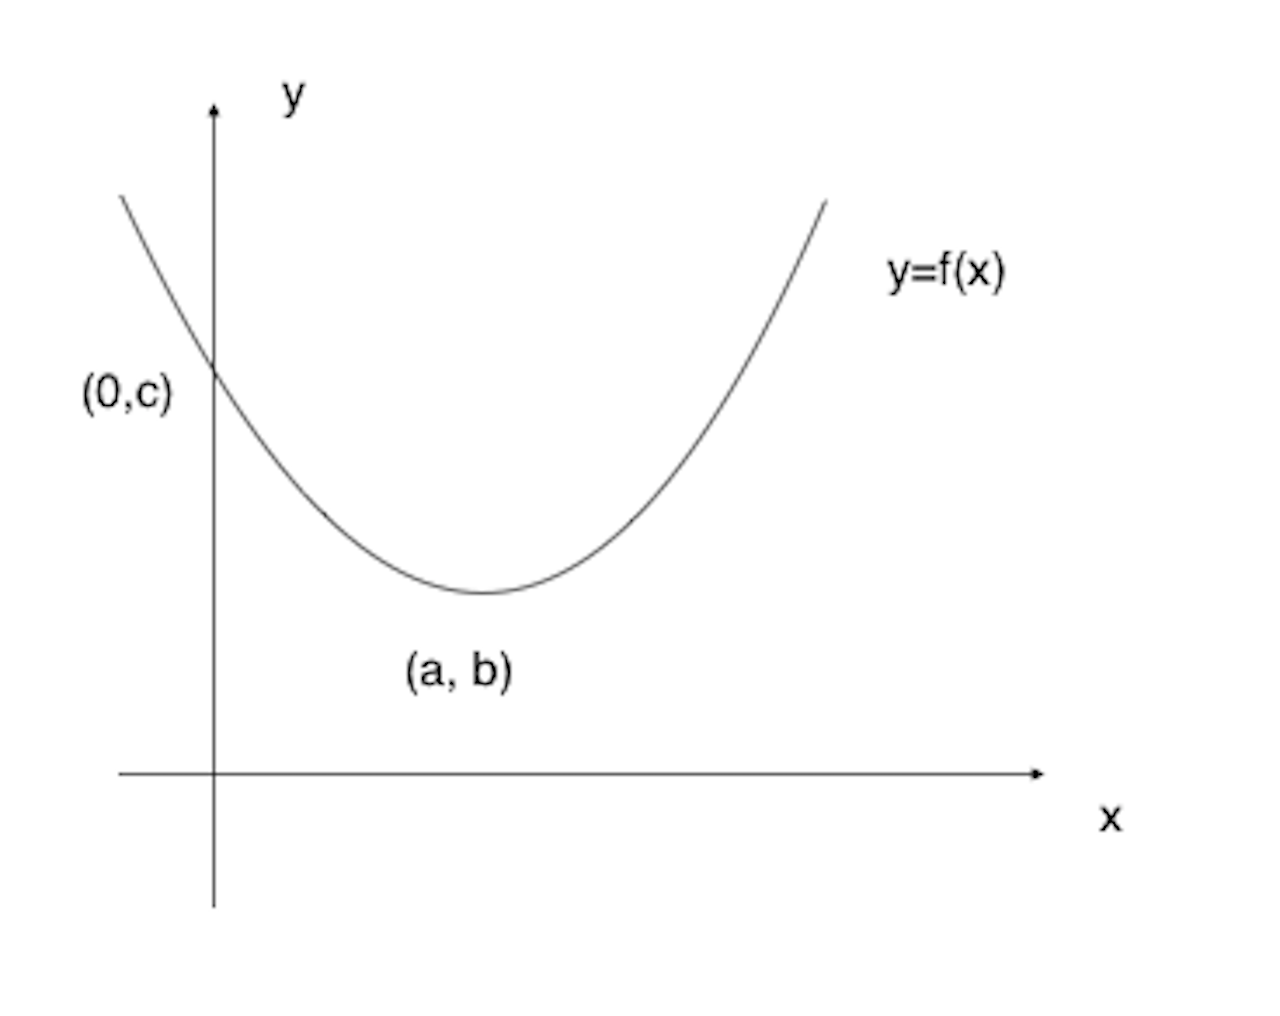 Graph for Q3 part 1